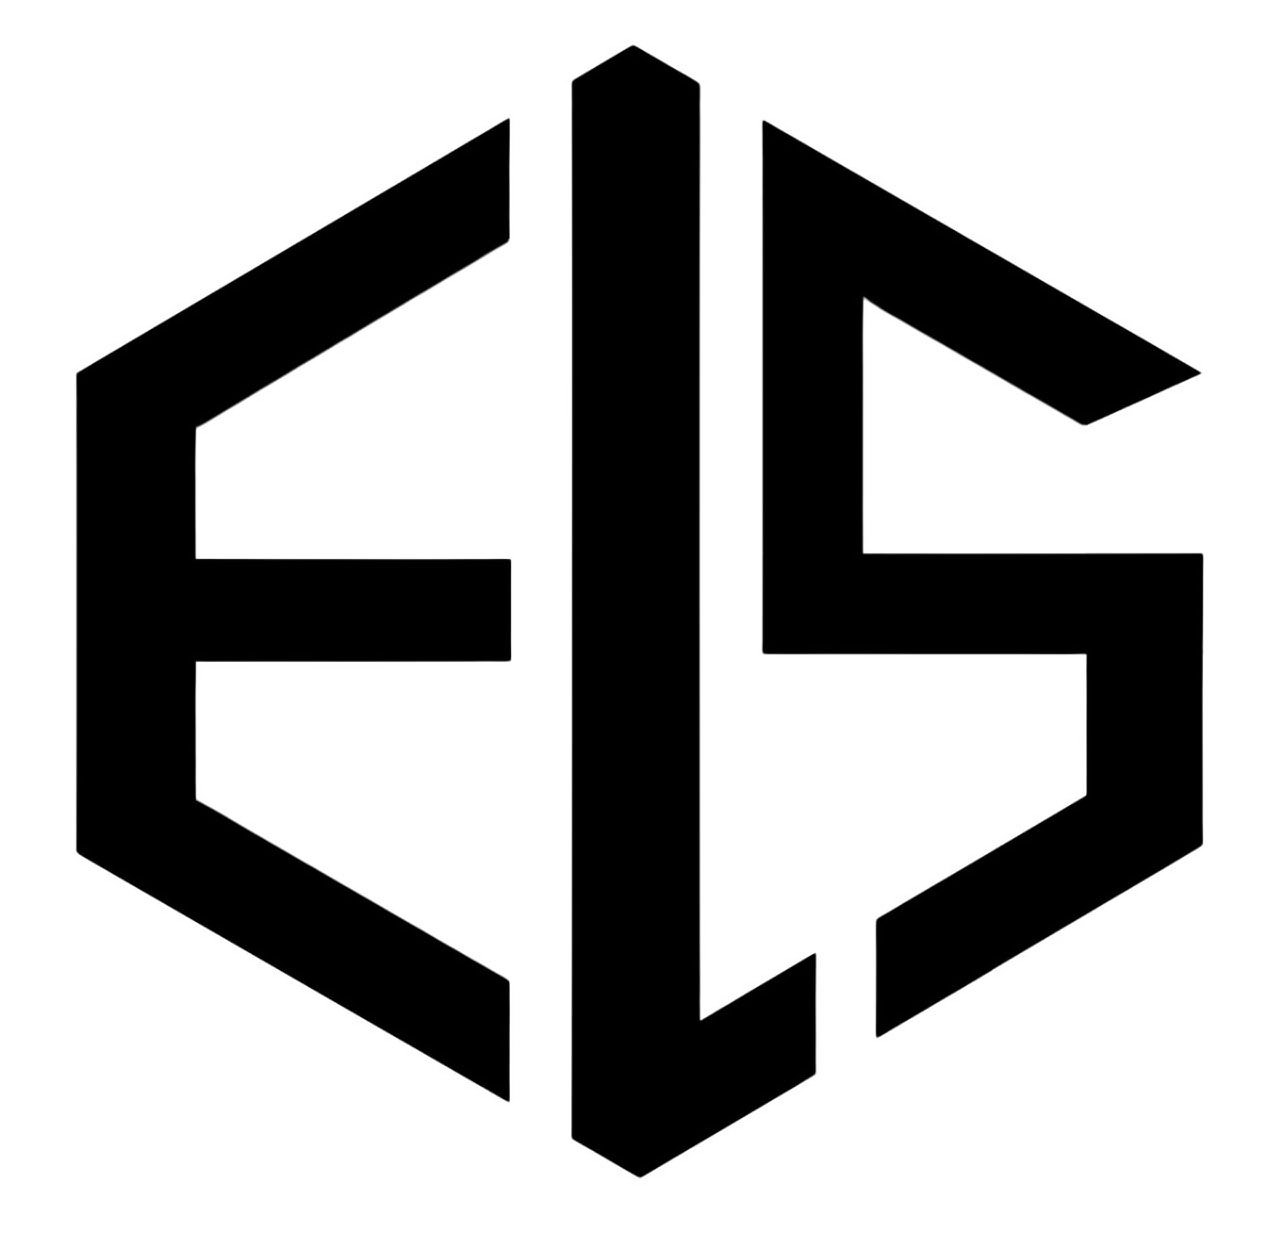 Trademark Logo ELS